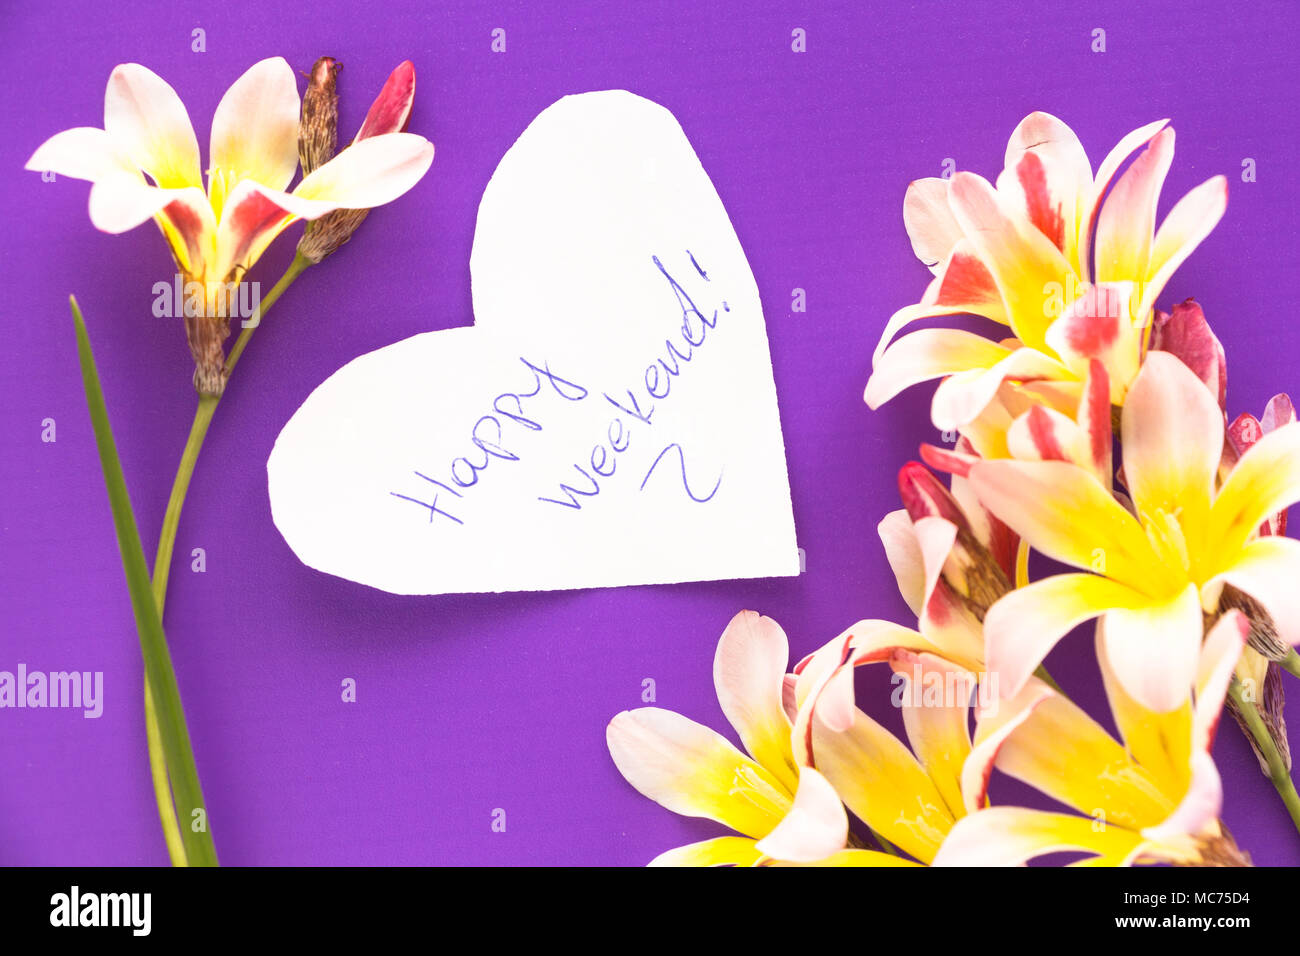 Nota en forma de corazón con las palabras "Feliz fin de semana!' con flores púrpura en la superficie. Foto de stock